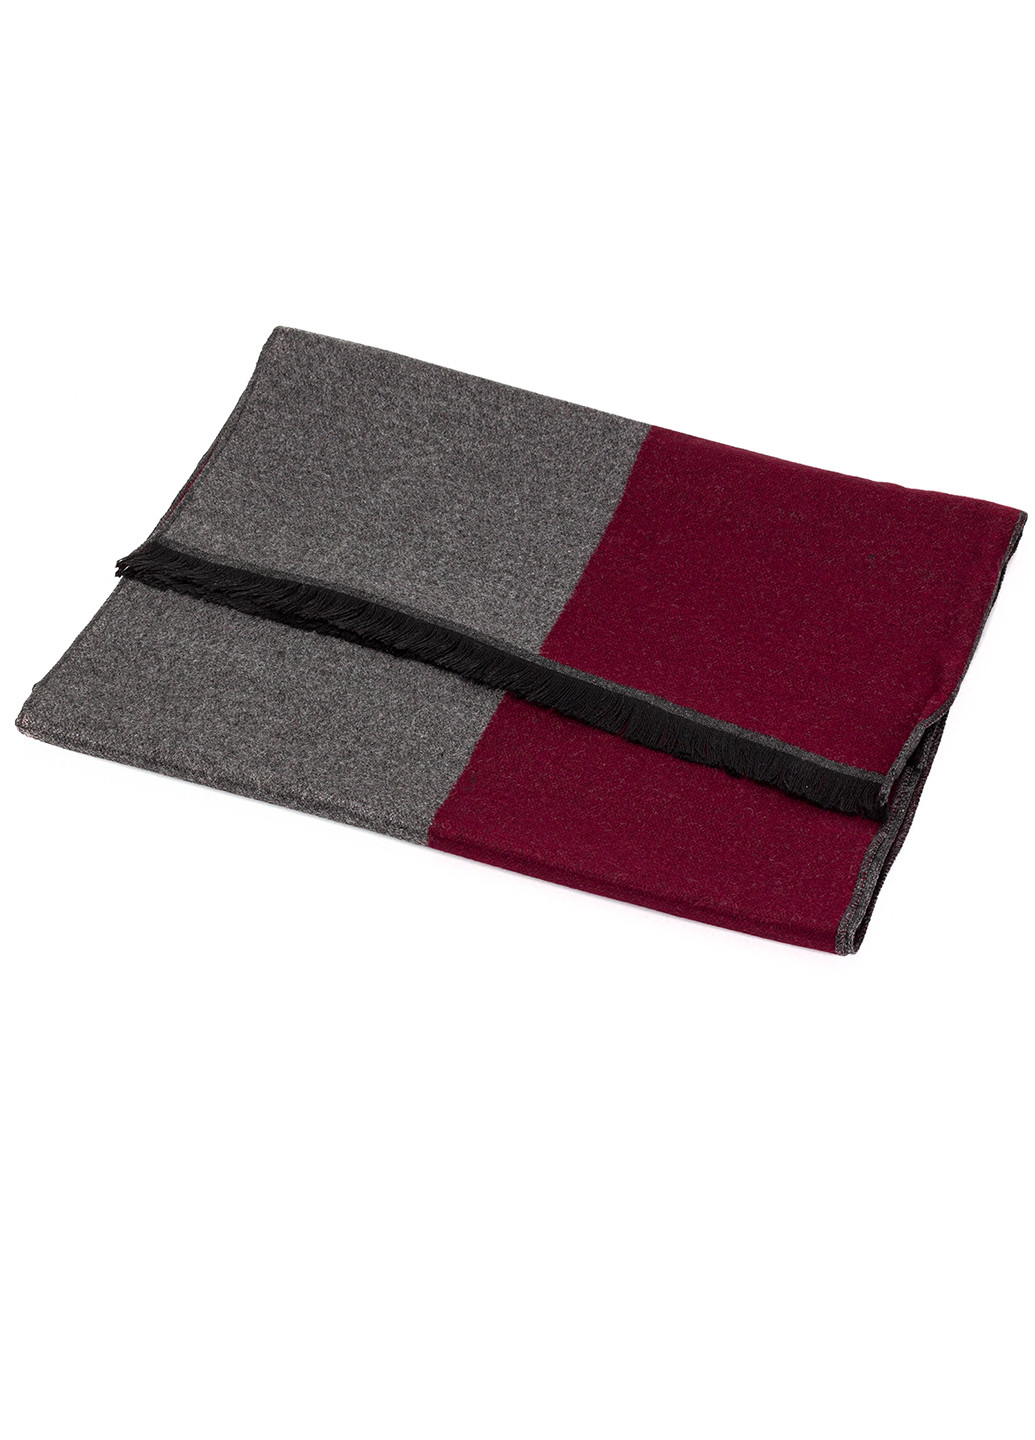 Мужской однотонный шарф серый с карсным LuxWear MS1008 однотонный серо-красный кэжуал полиэстер